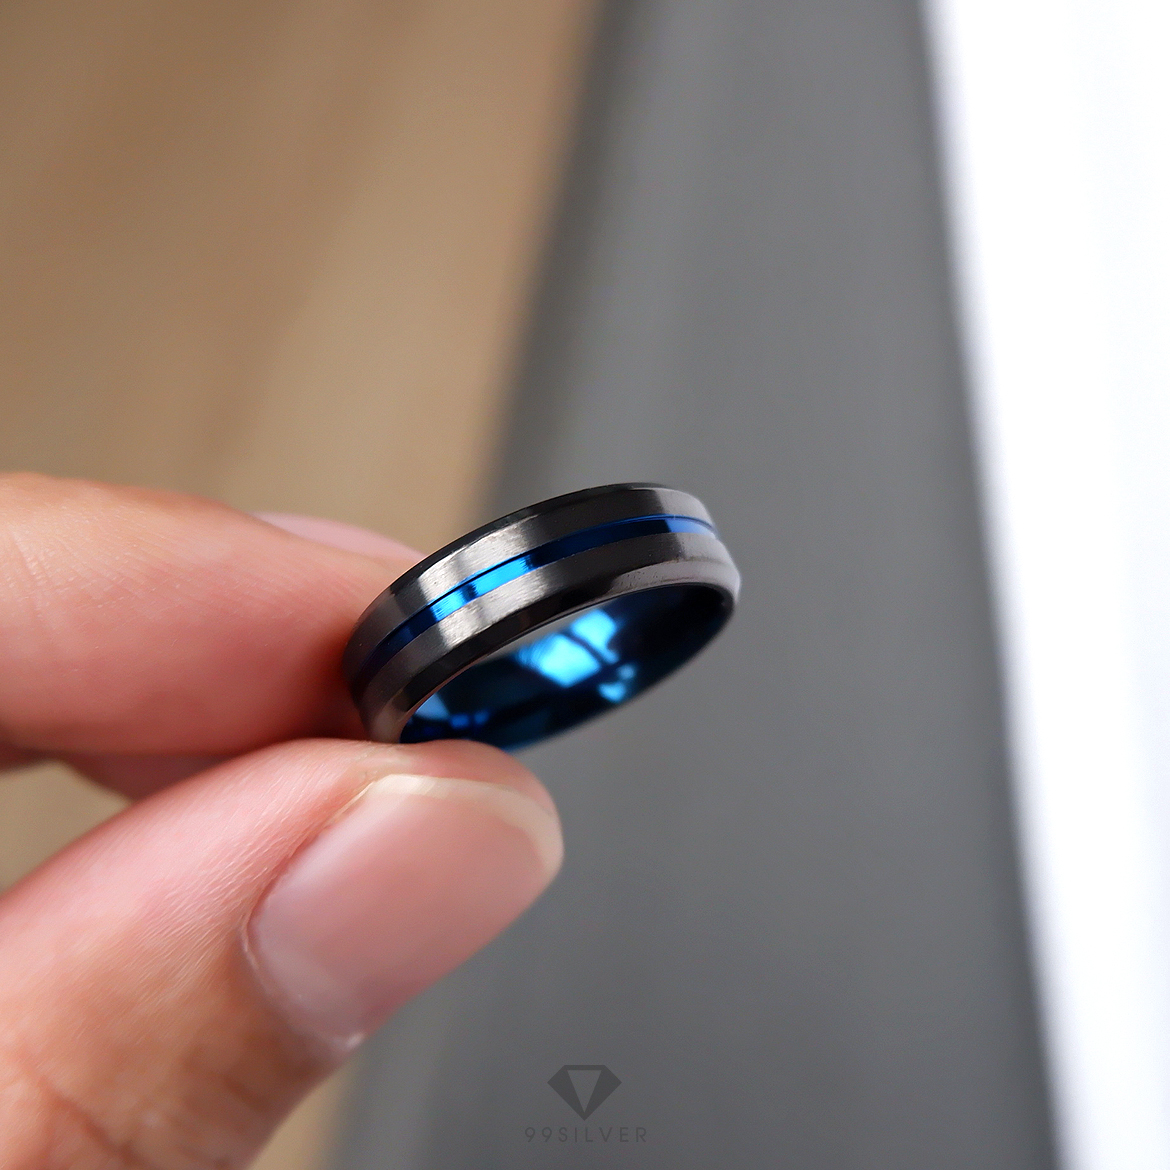 แหวนสแตนเลส Blue Black ไทเทเนี่ยม หน้ากว้าง 6 มิล ผิวเรียบปัดด้านแฮร์ไลน์